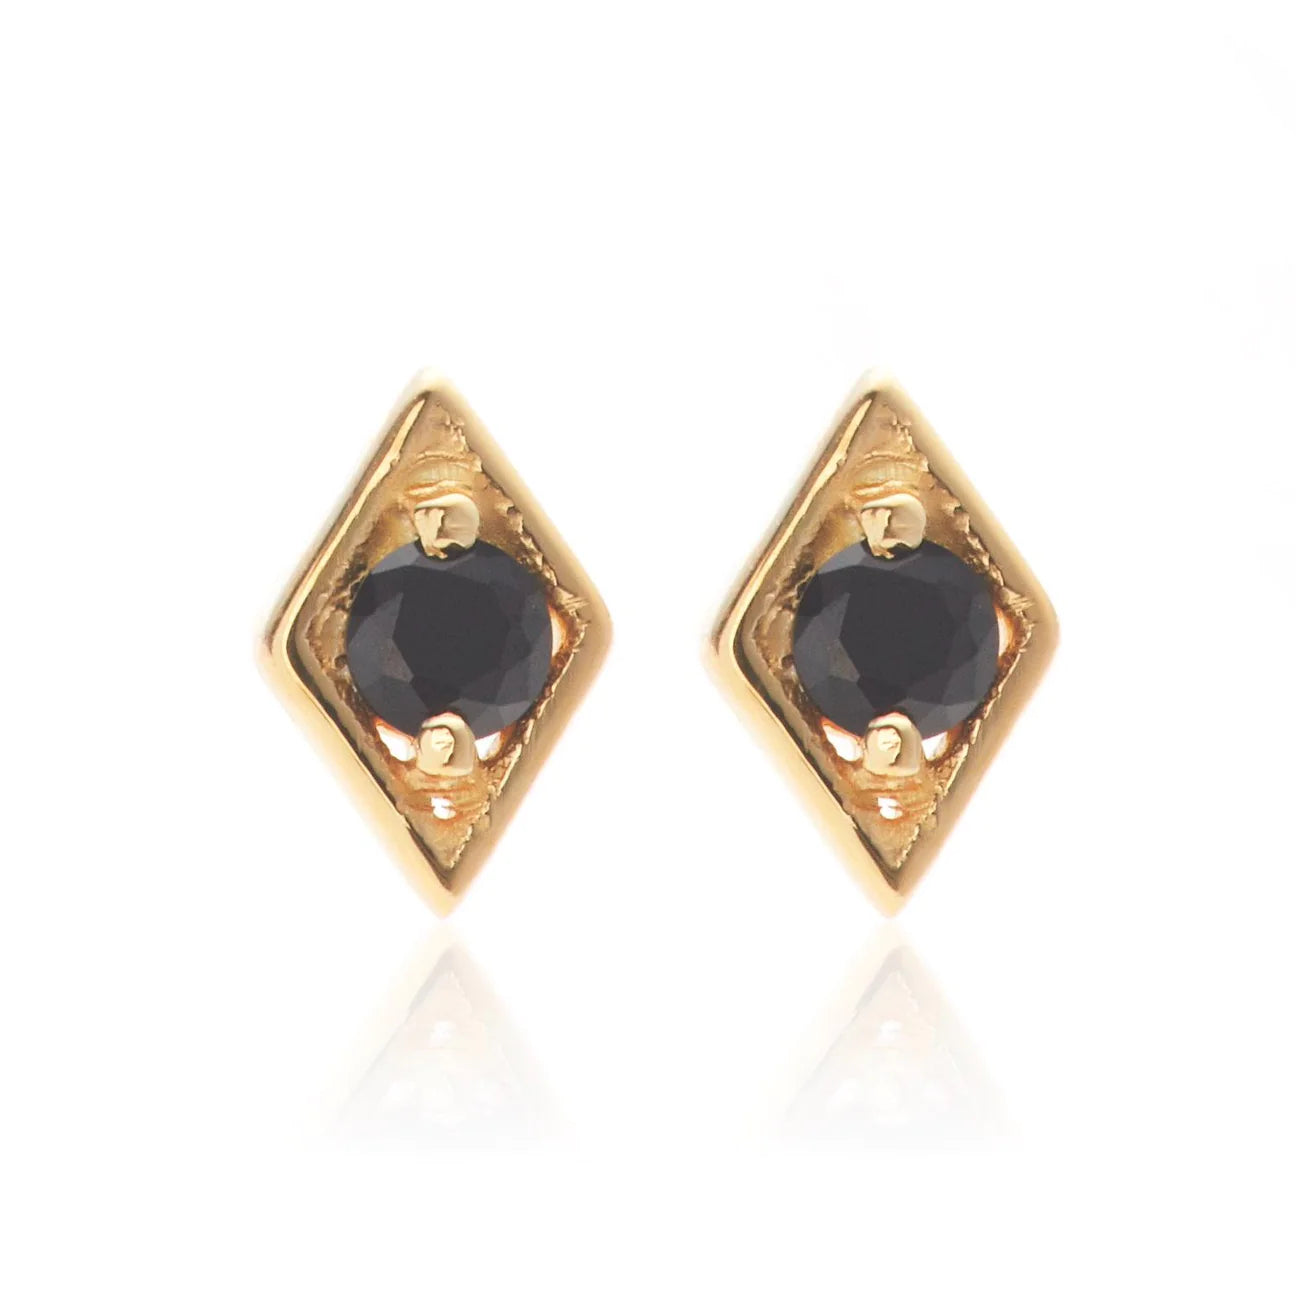 Black spinel diamond shape stud earrings - GP